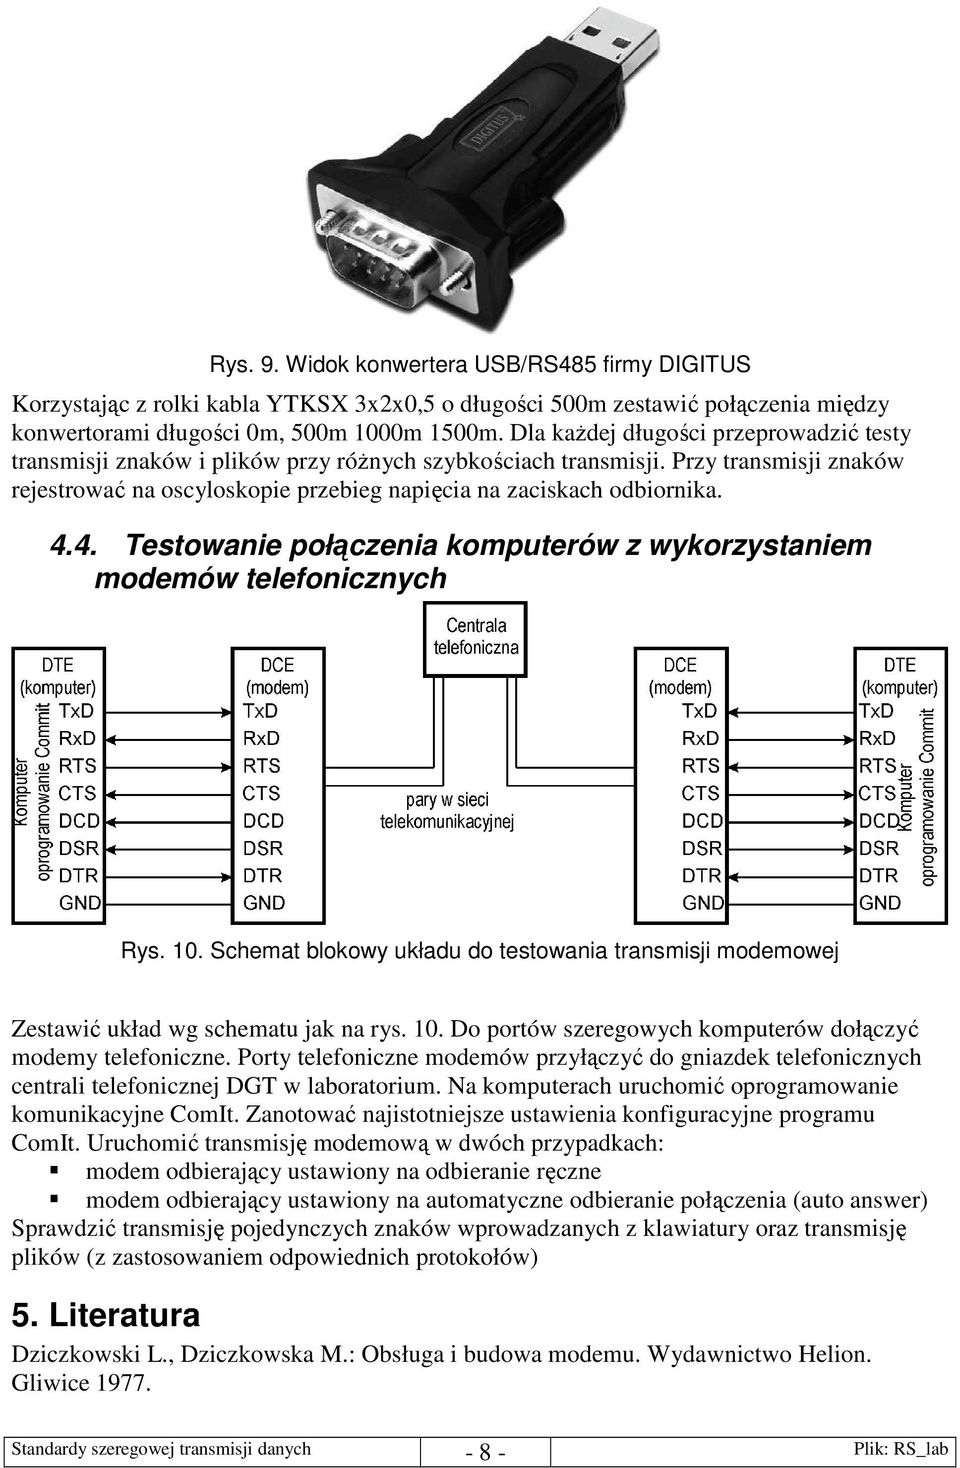 4.4. Testowanie połączenia komputerów z wykorzystaniem modemów telefonicznych Rys. 10. Schemat blokowy układu do testowania transmisji modemowej Zestawić układ wg schematu jak na rys. 10. Do portów szeregowych komputerów dołączyć modemy telefoniczne.